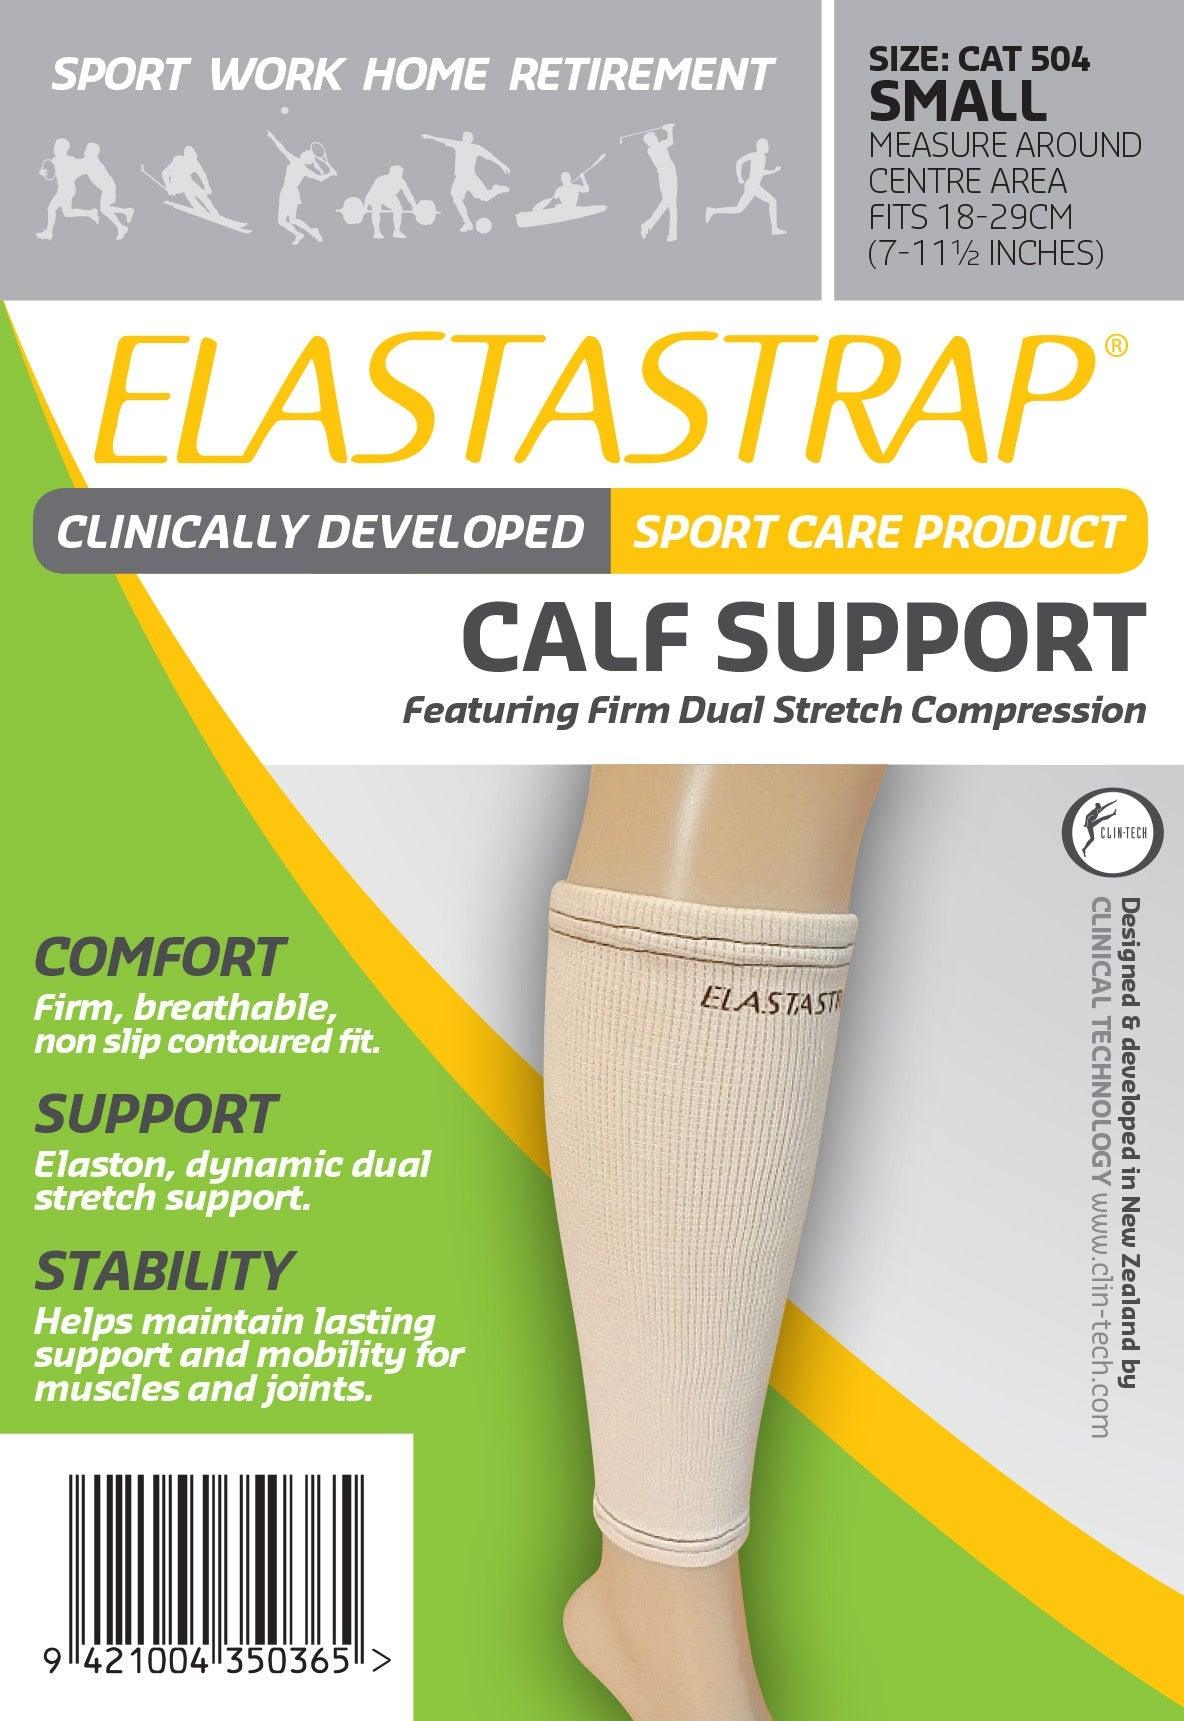 Elastastrap Compression Calf Support